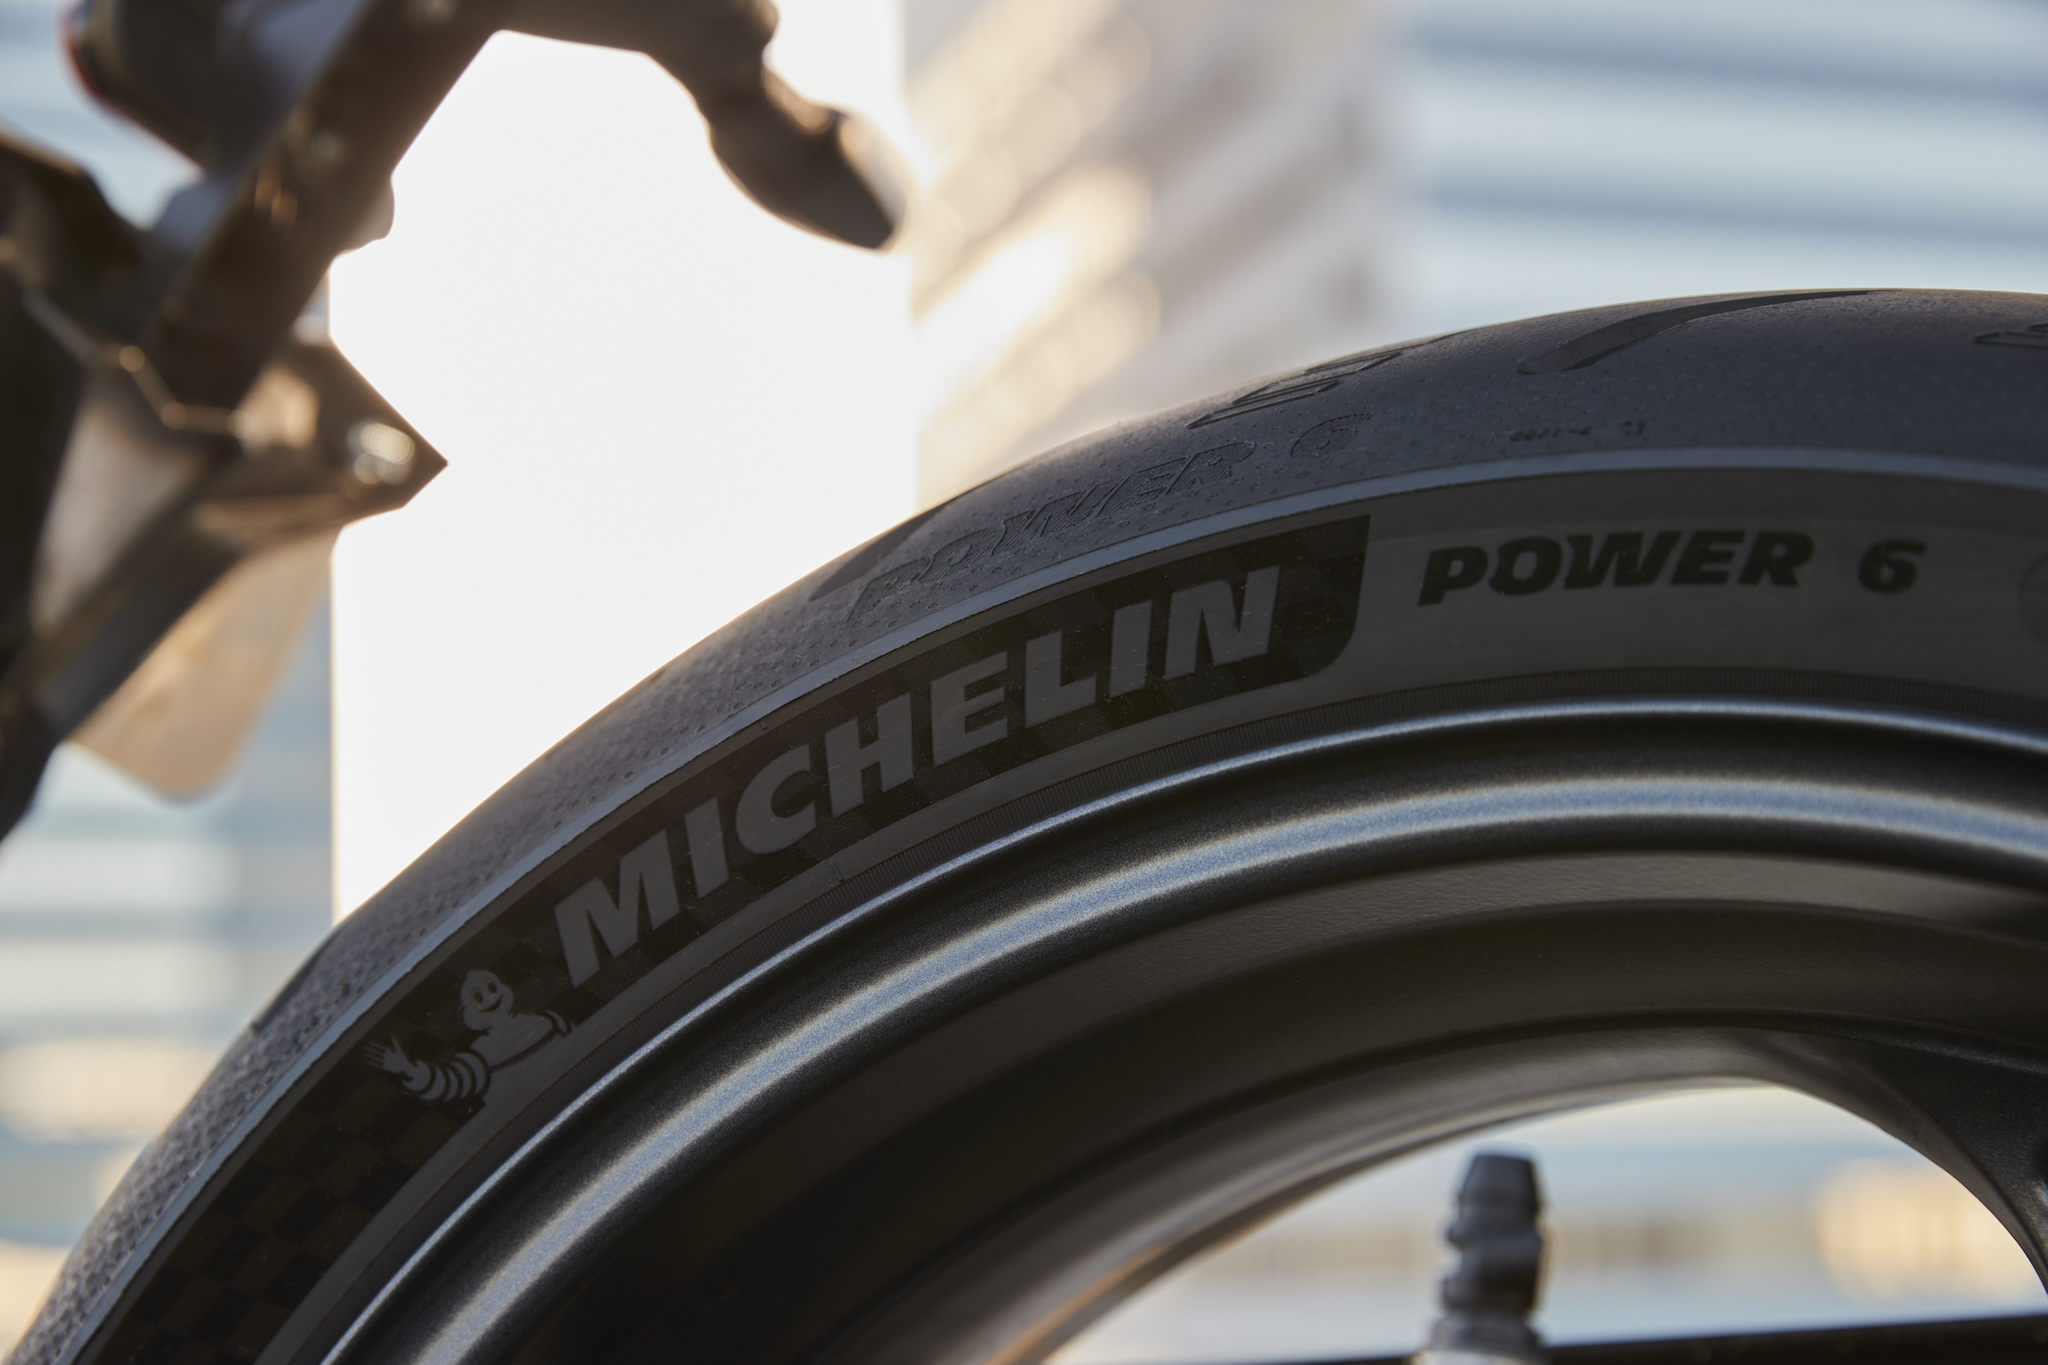 Triumph Michelin